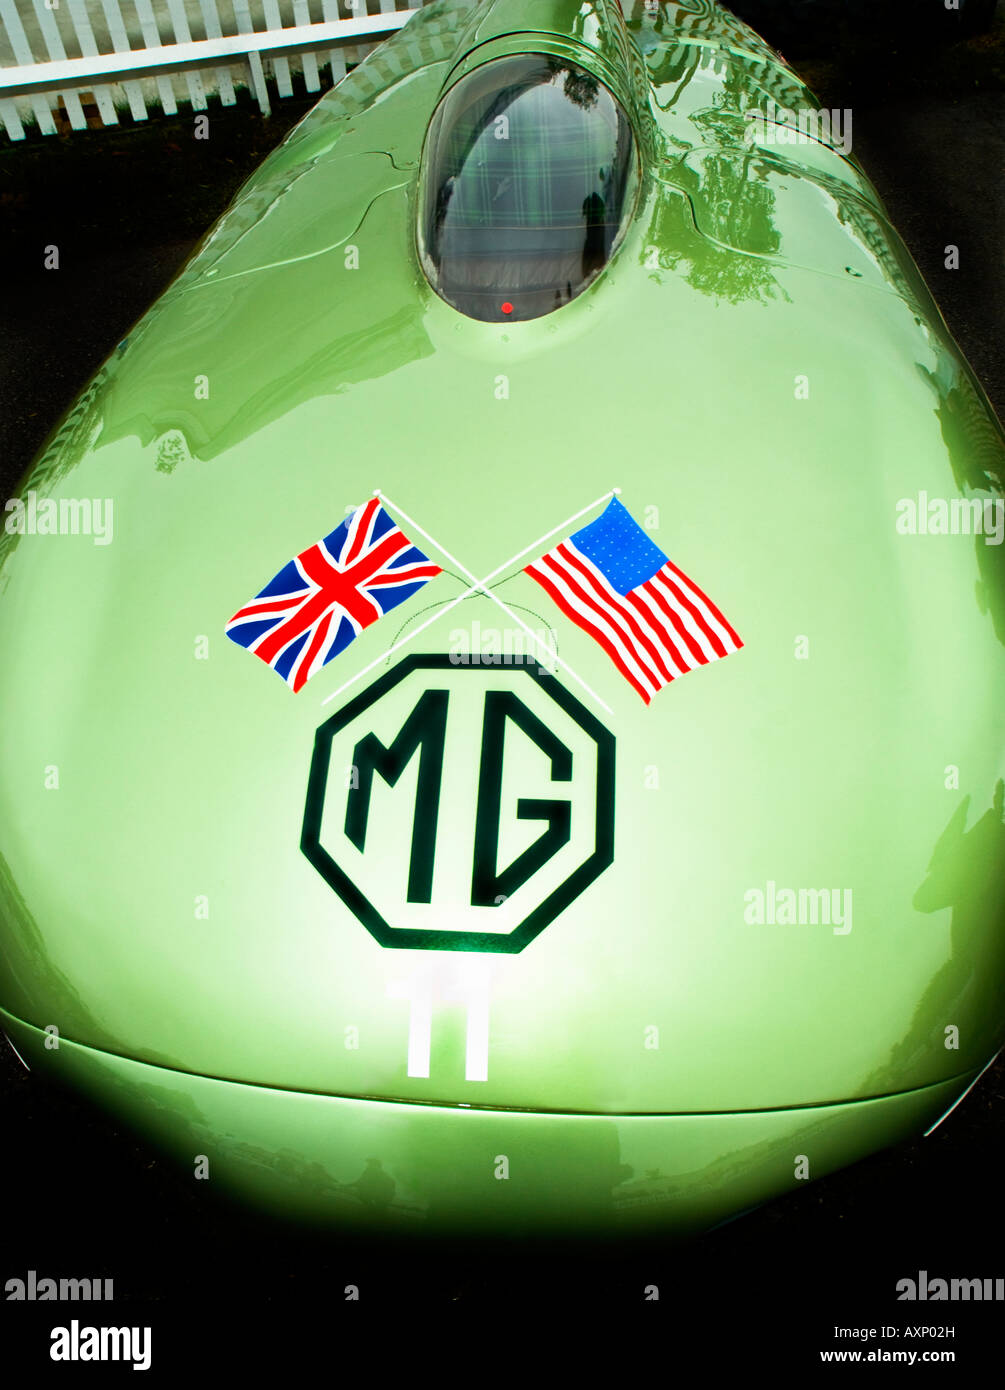 Vert Curvy MG Voiture de course historique franchi avec Union Jack British et USA stars and stripes flag logo peinture Banque D'Images